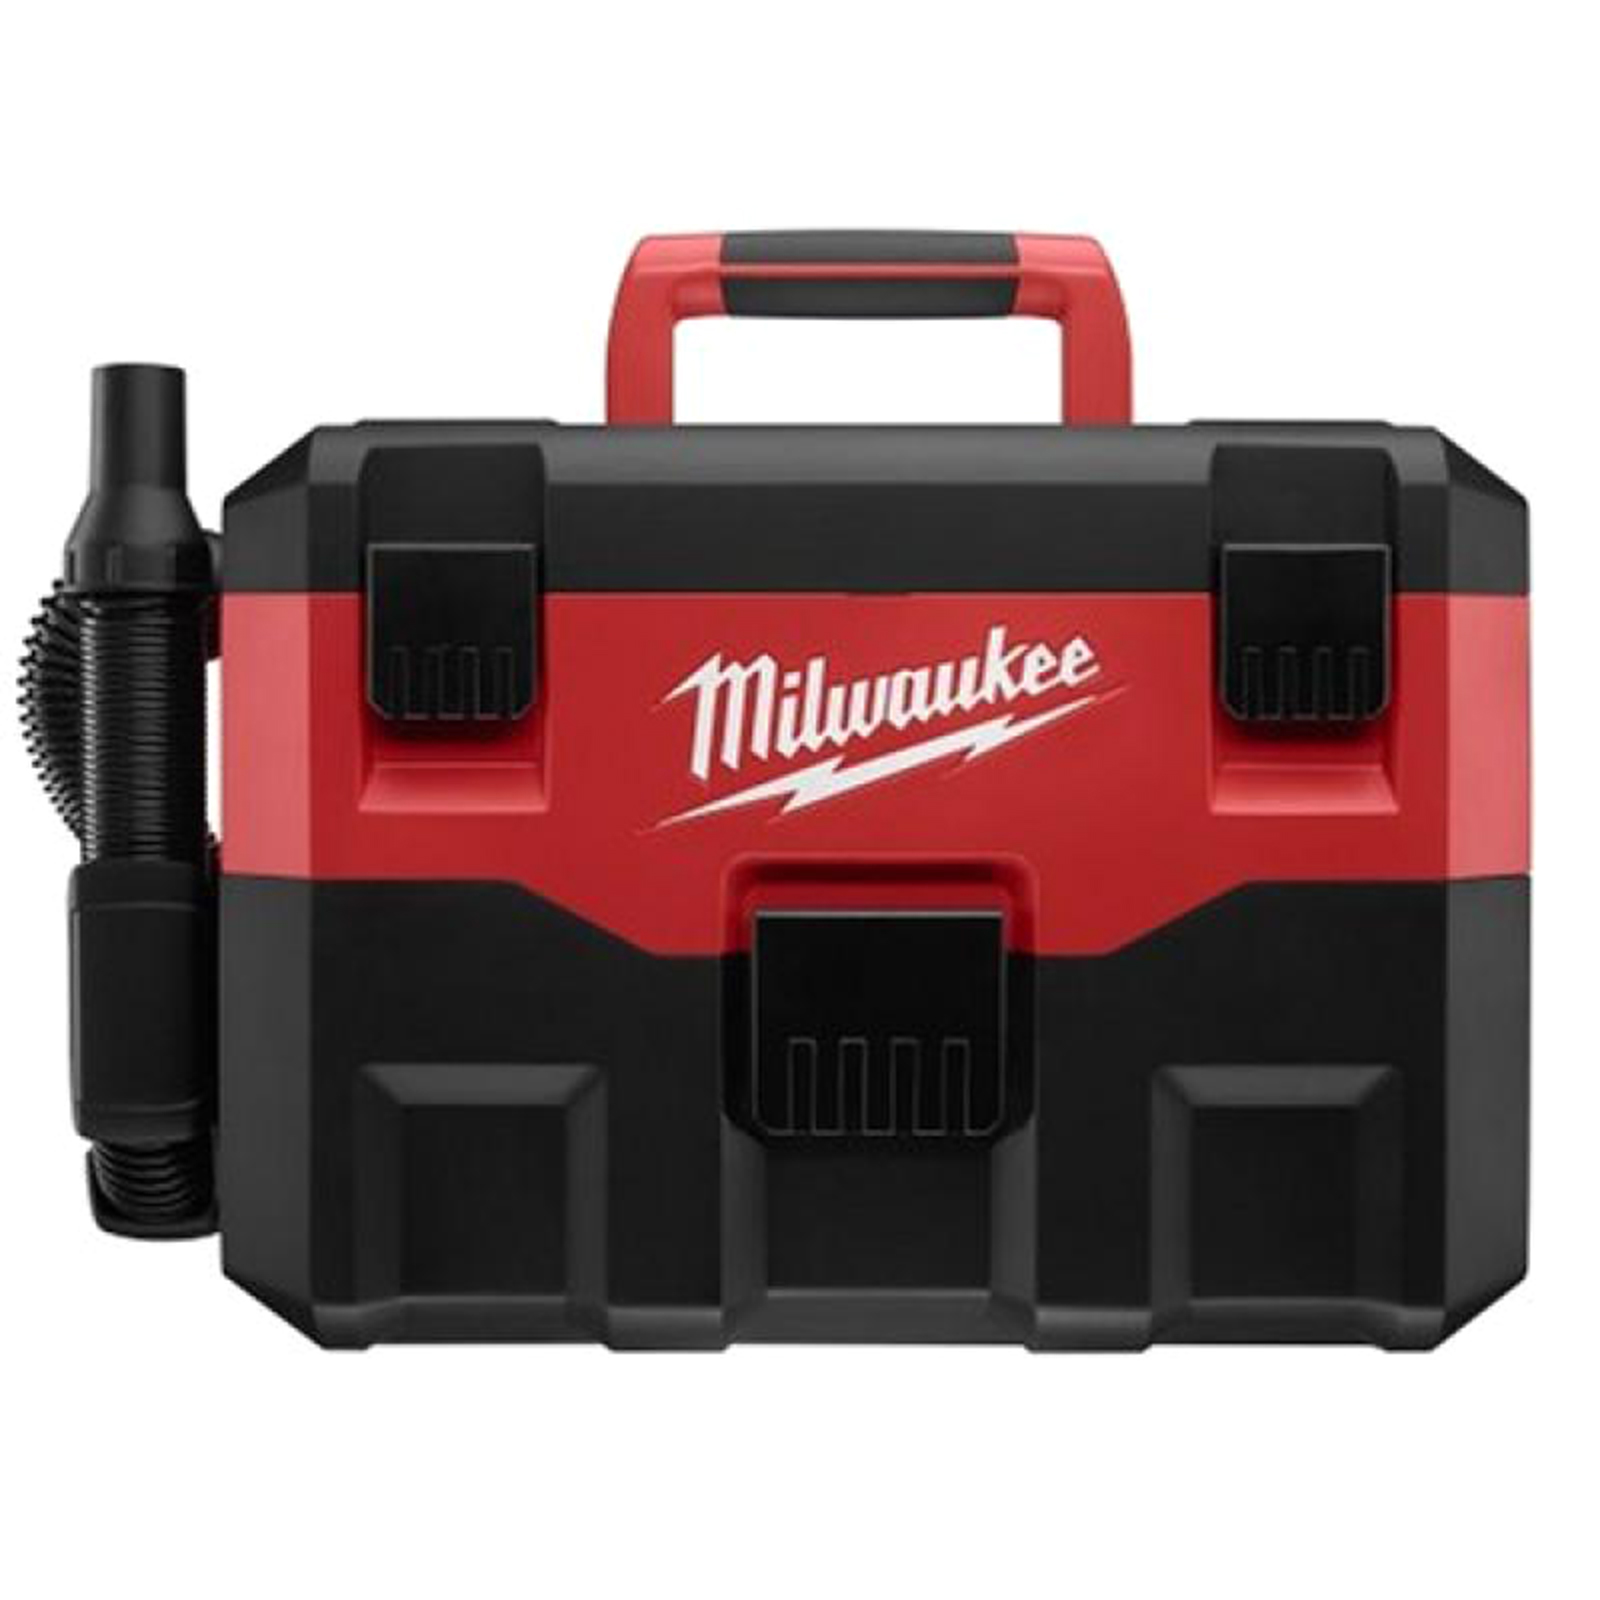 Milwaukee M18 Wet/Dry Vacuum